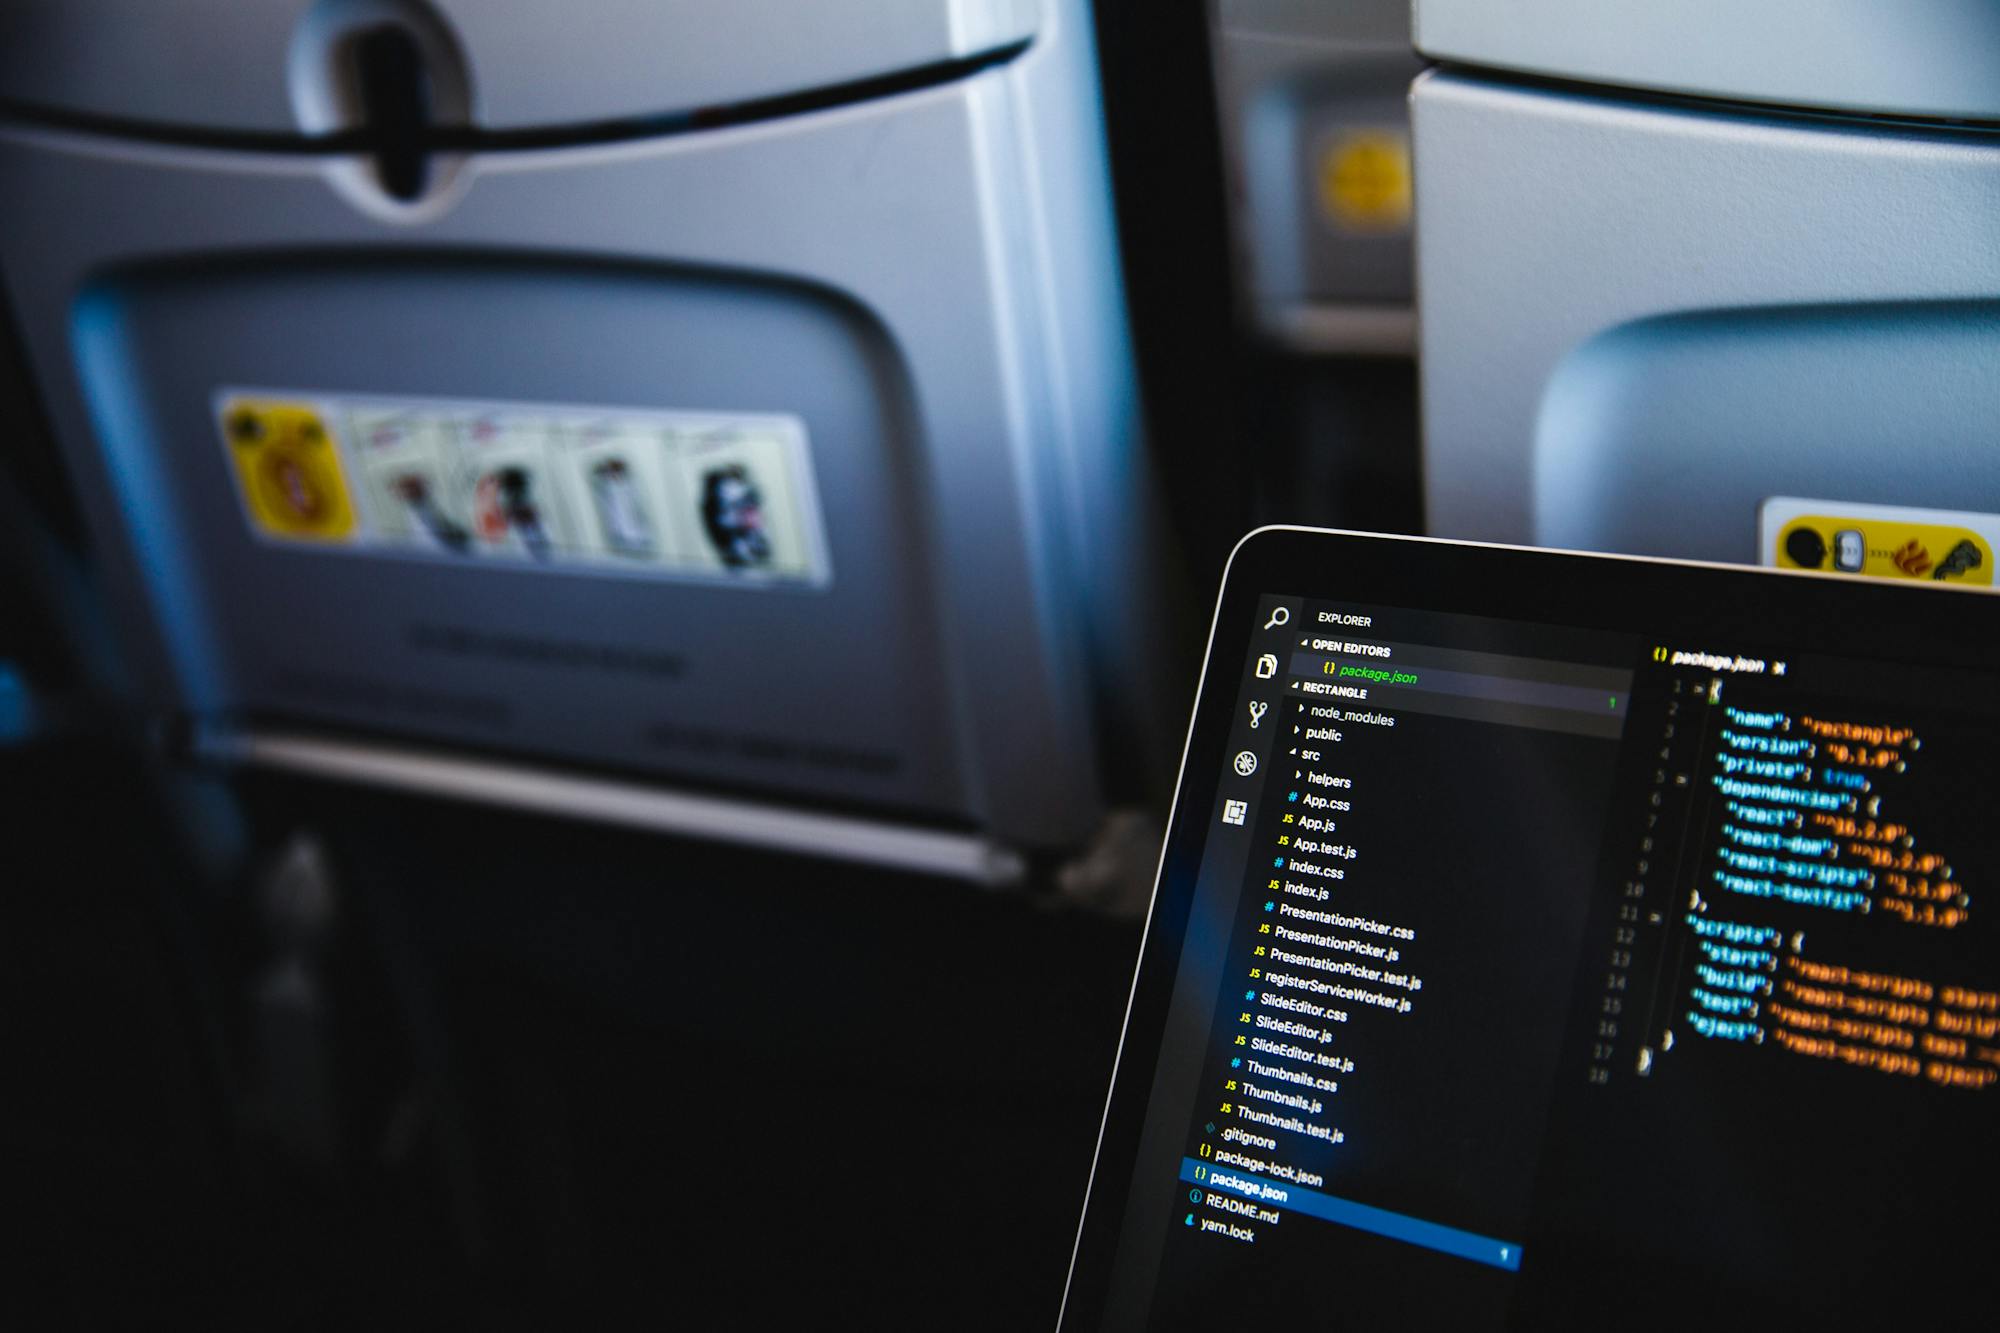 Otwarty laptop na kolanach pasażera samolotu. Na ekranie widoczne są różne kody programistyczne/matematyczne.